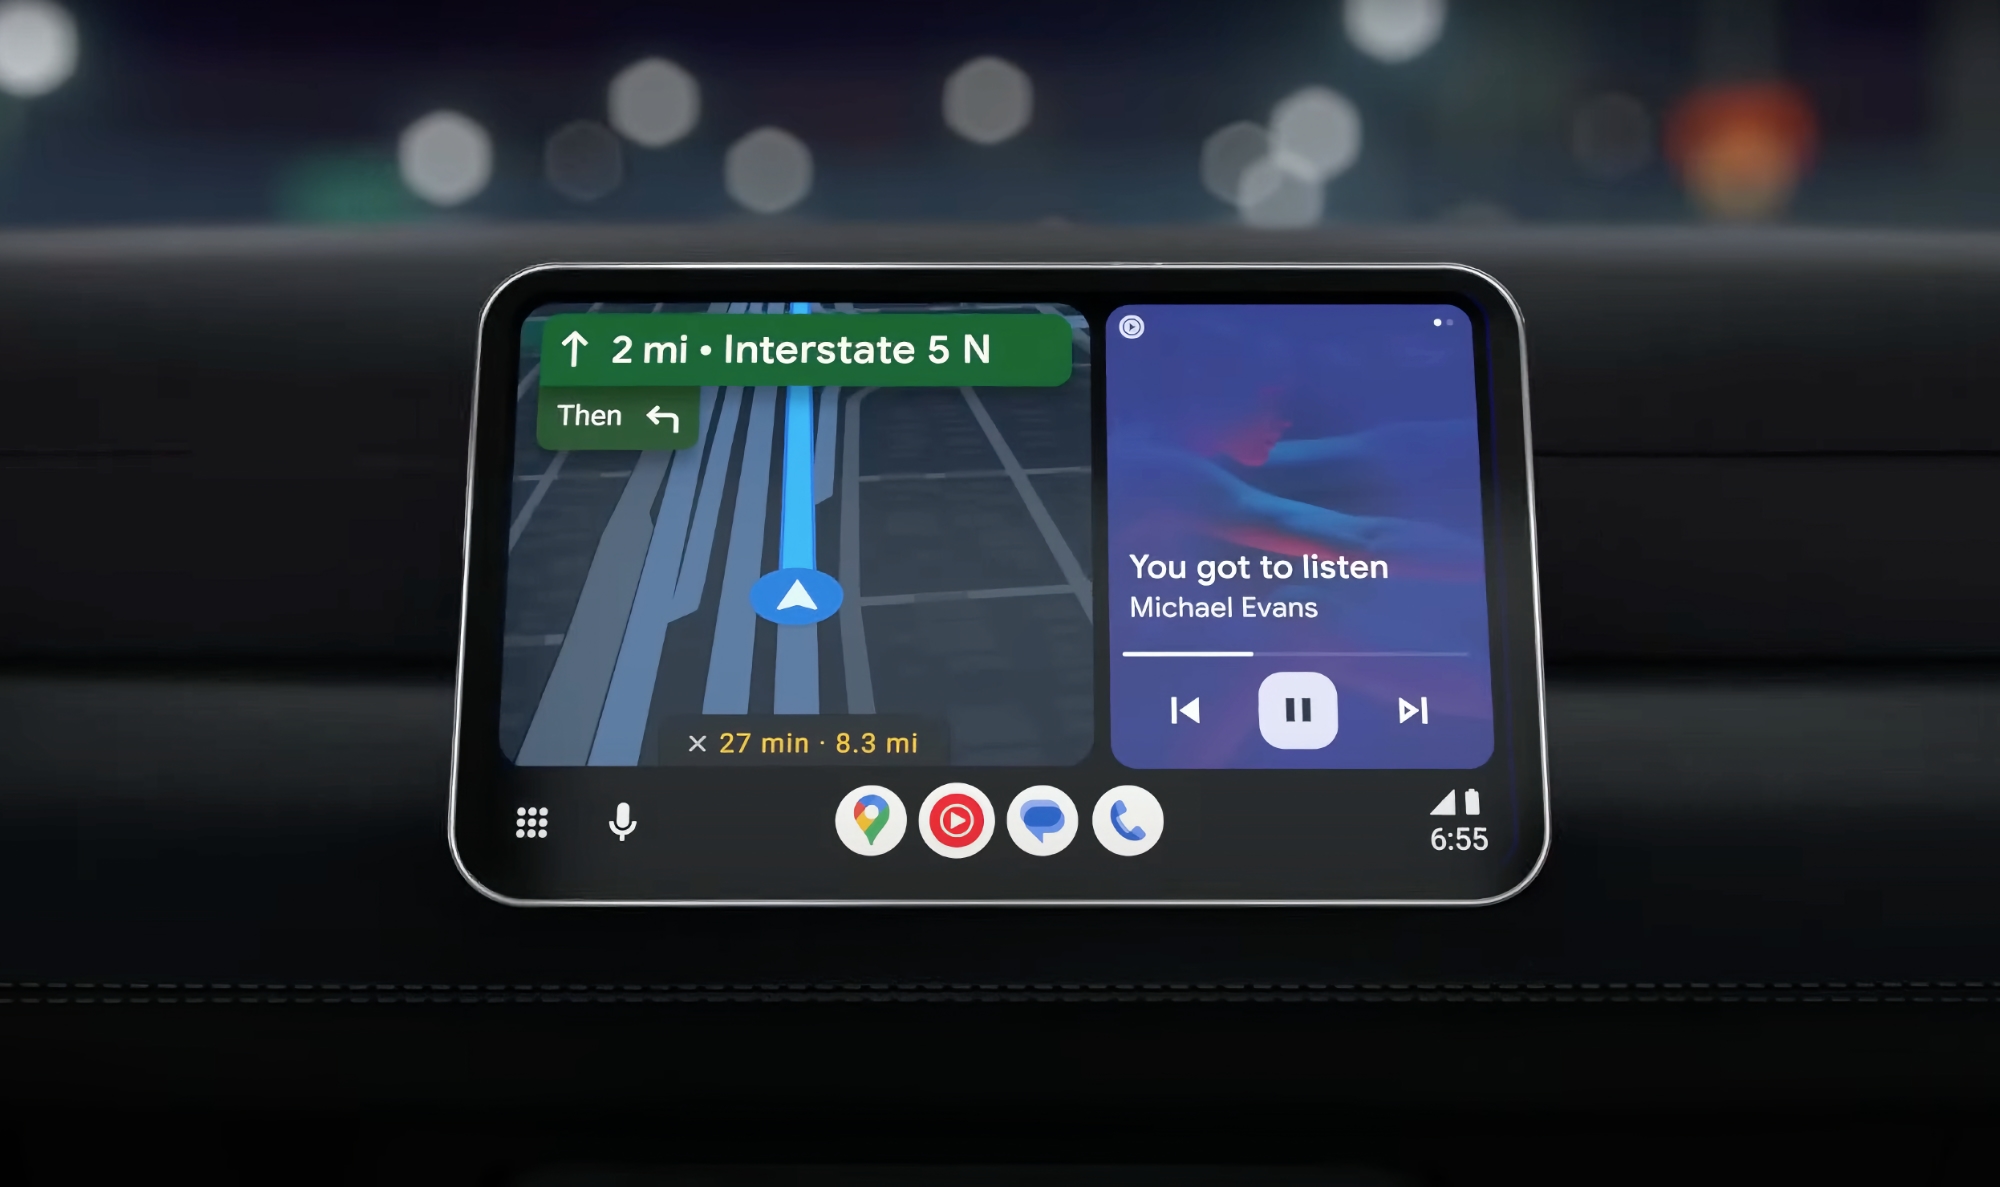 Finalmente, Google ha lanzado una nueva versión de Android Auto para todos los usuarios